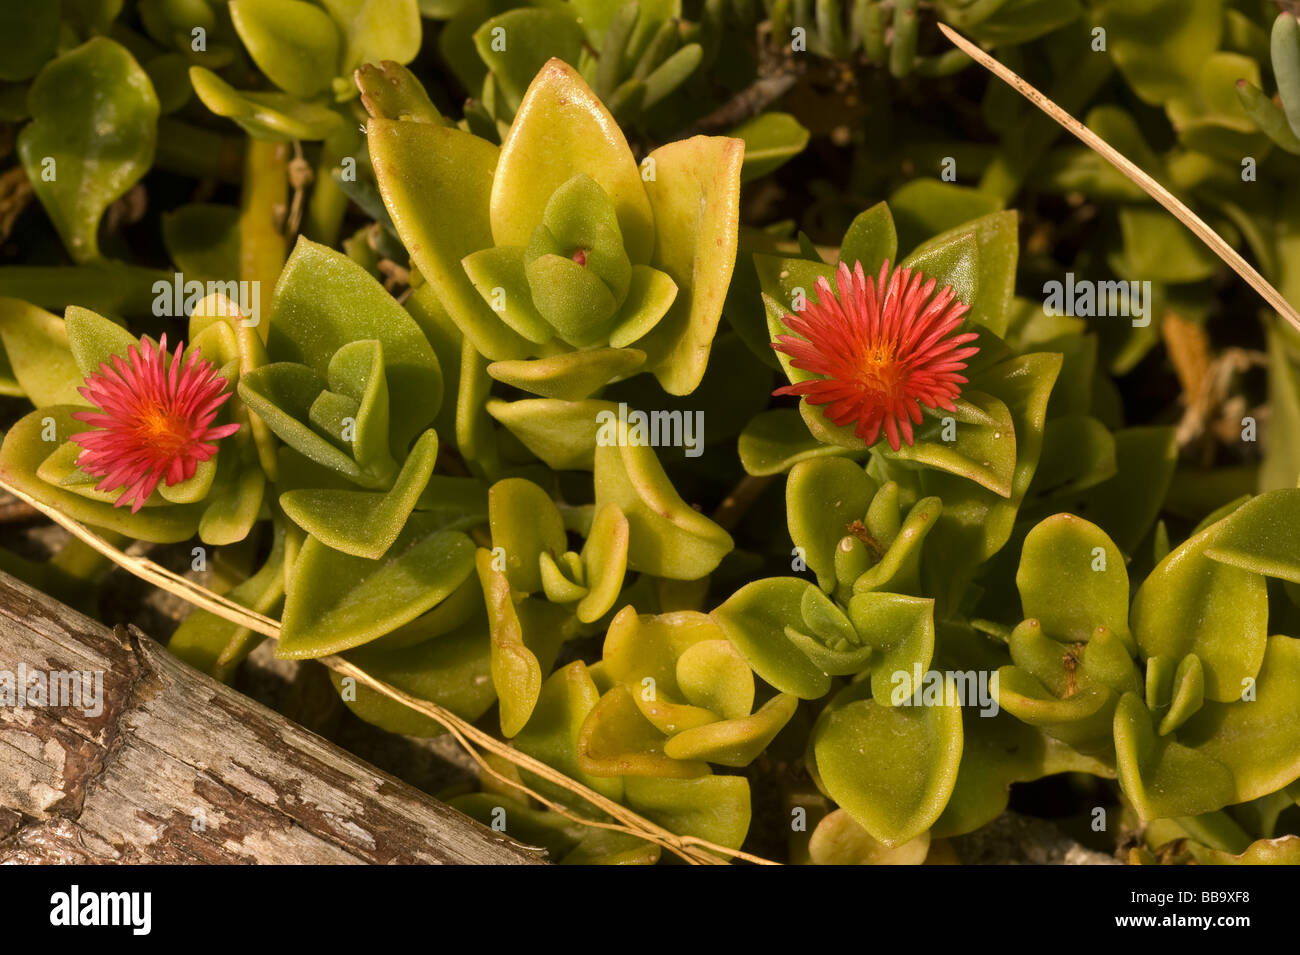 Aptenia cordifolia immagini e fotografie stock ad alta risoluzione - Alamy